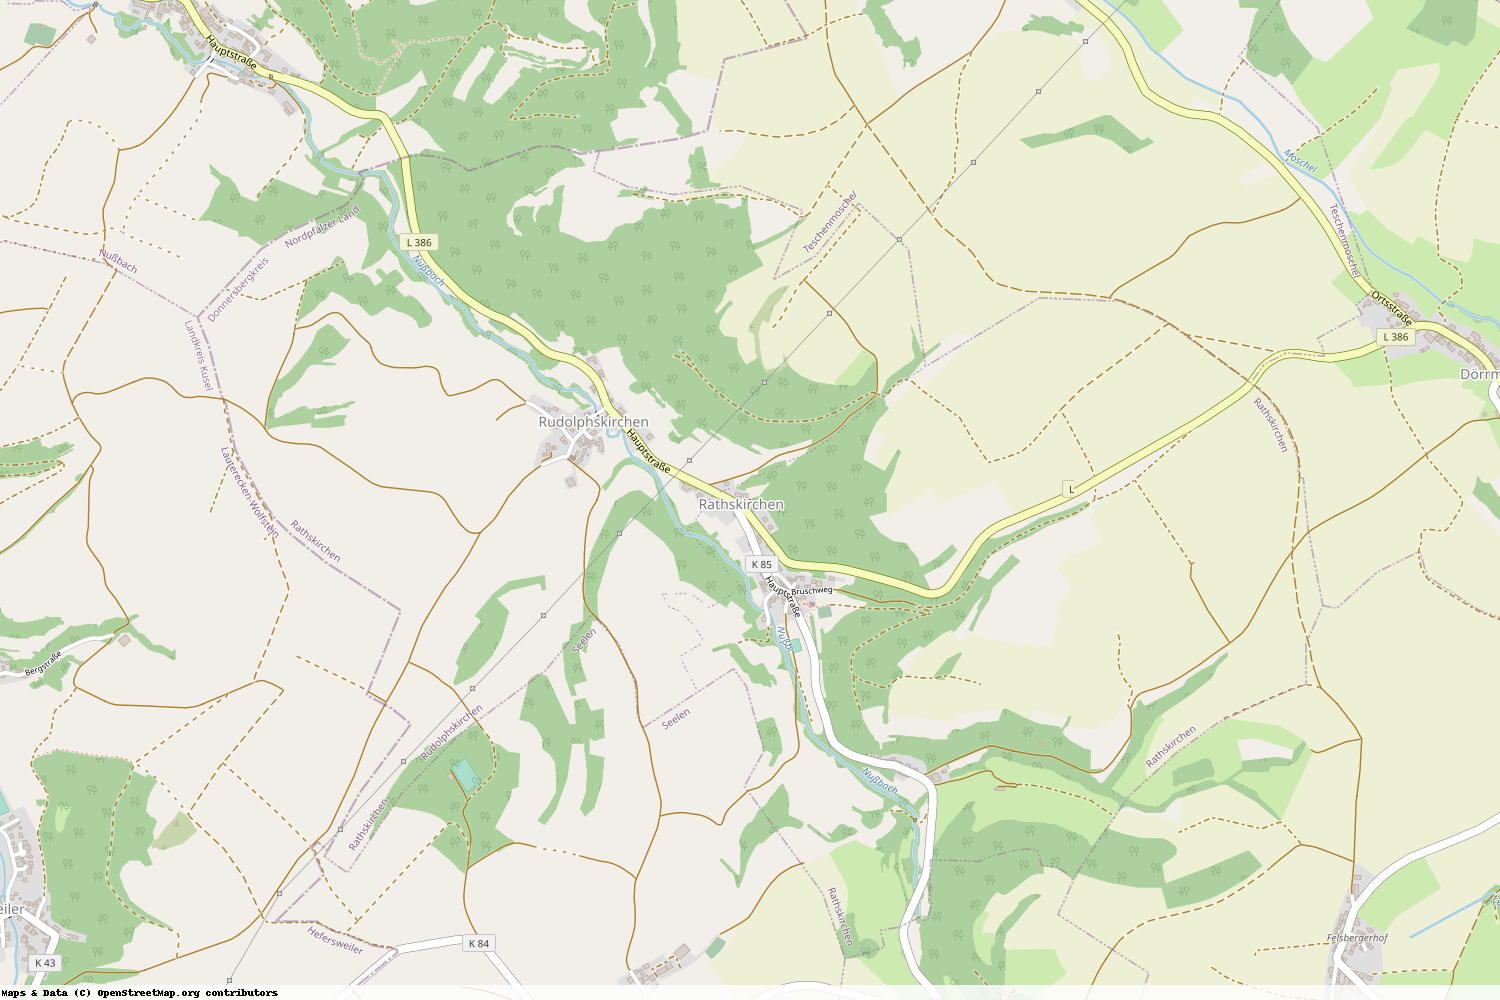 Ist gerade Stromausfall in Rheinland-Pfalz - Donnersbergkreis - Rathskirchen?